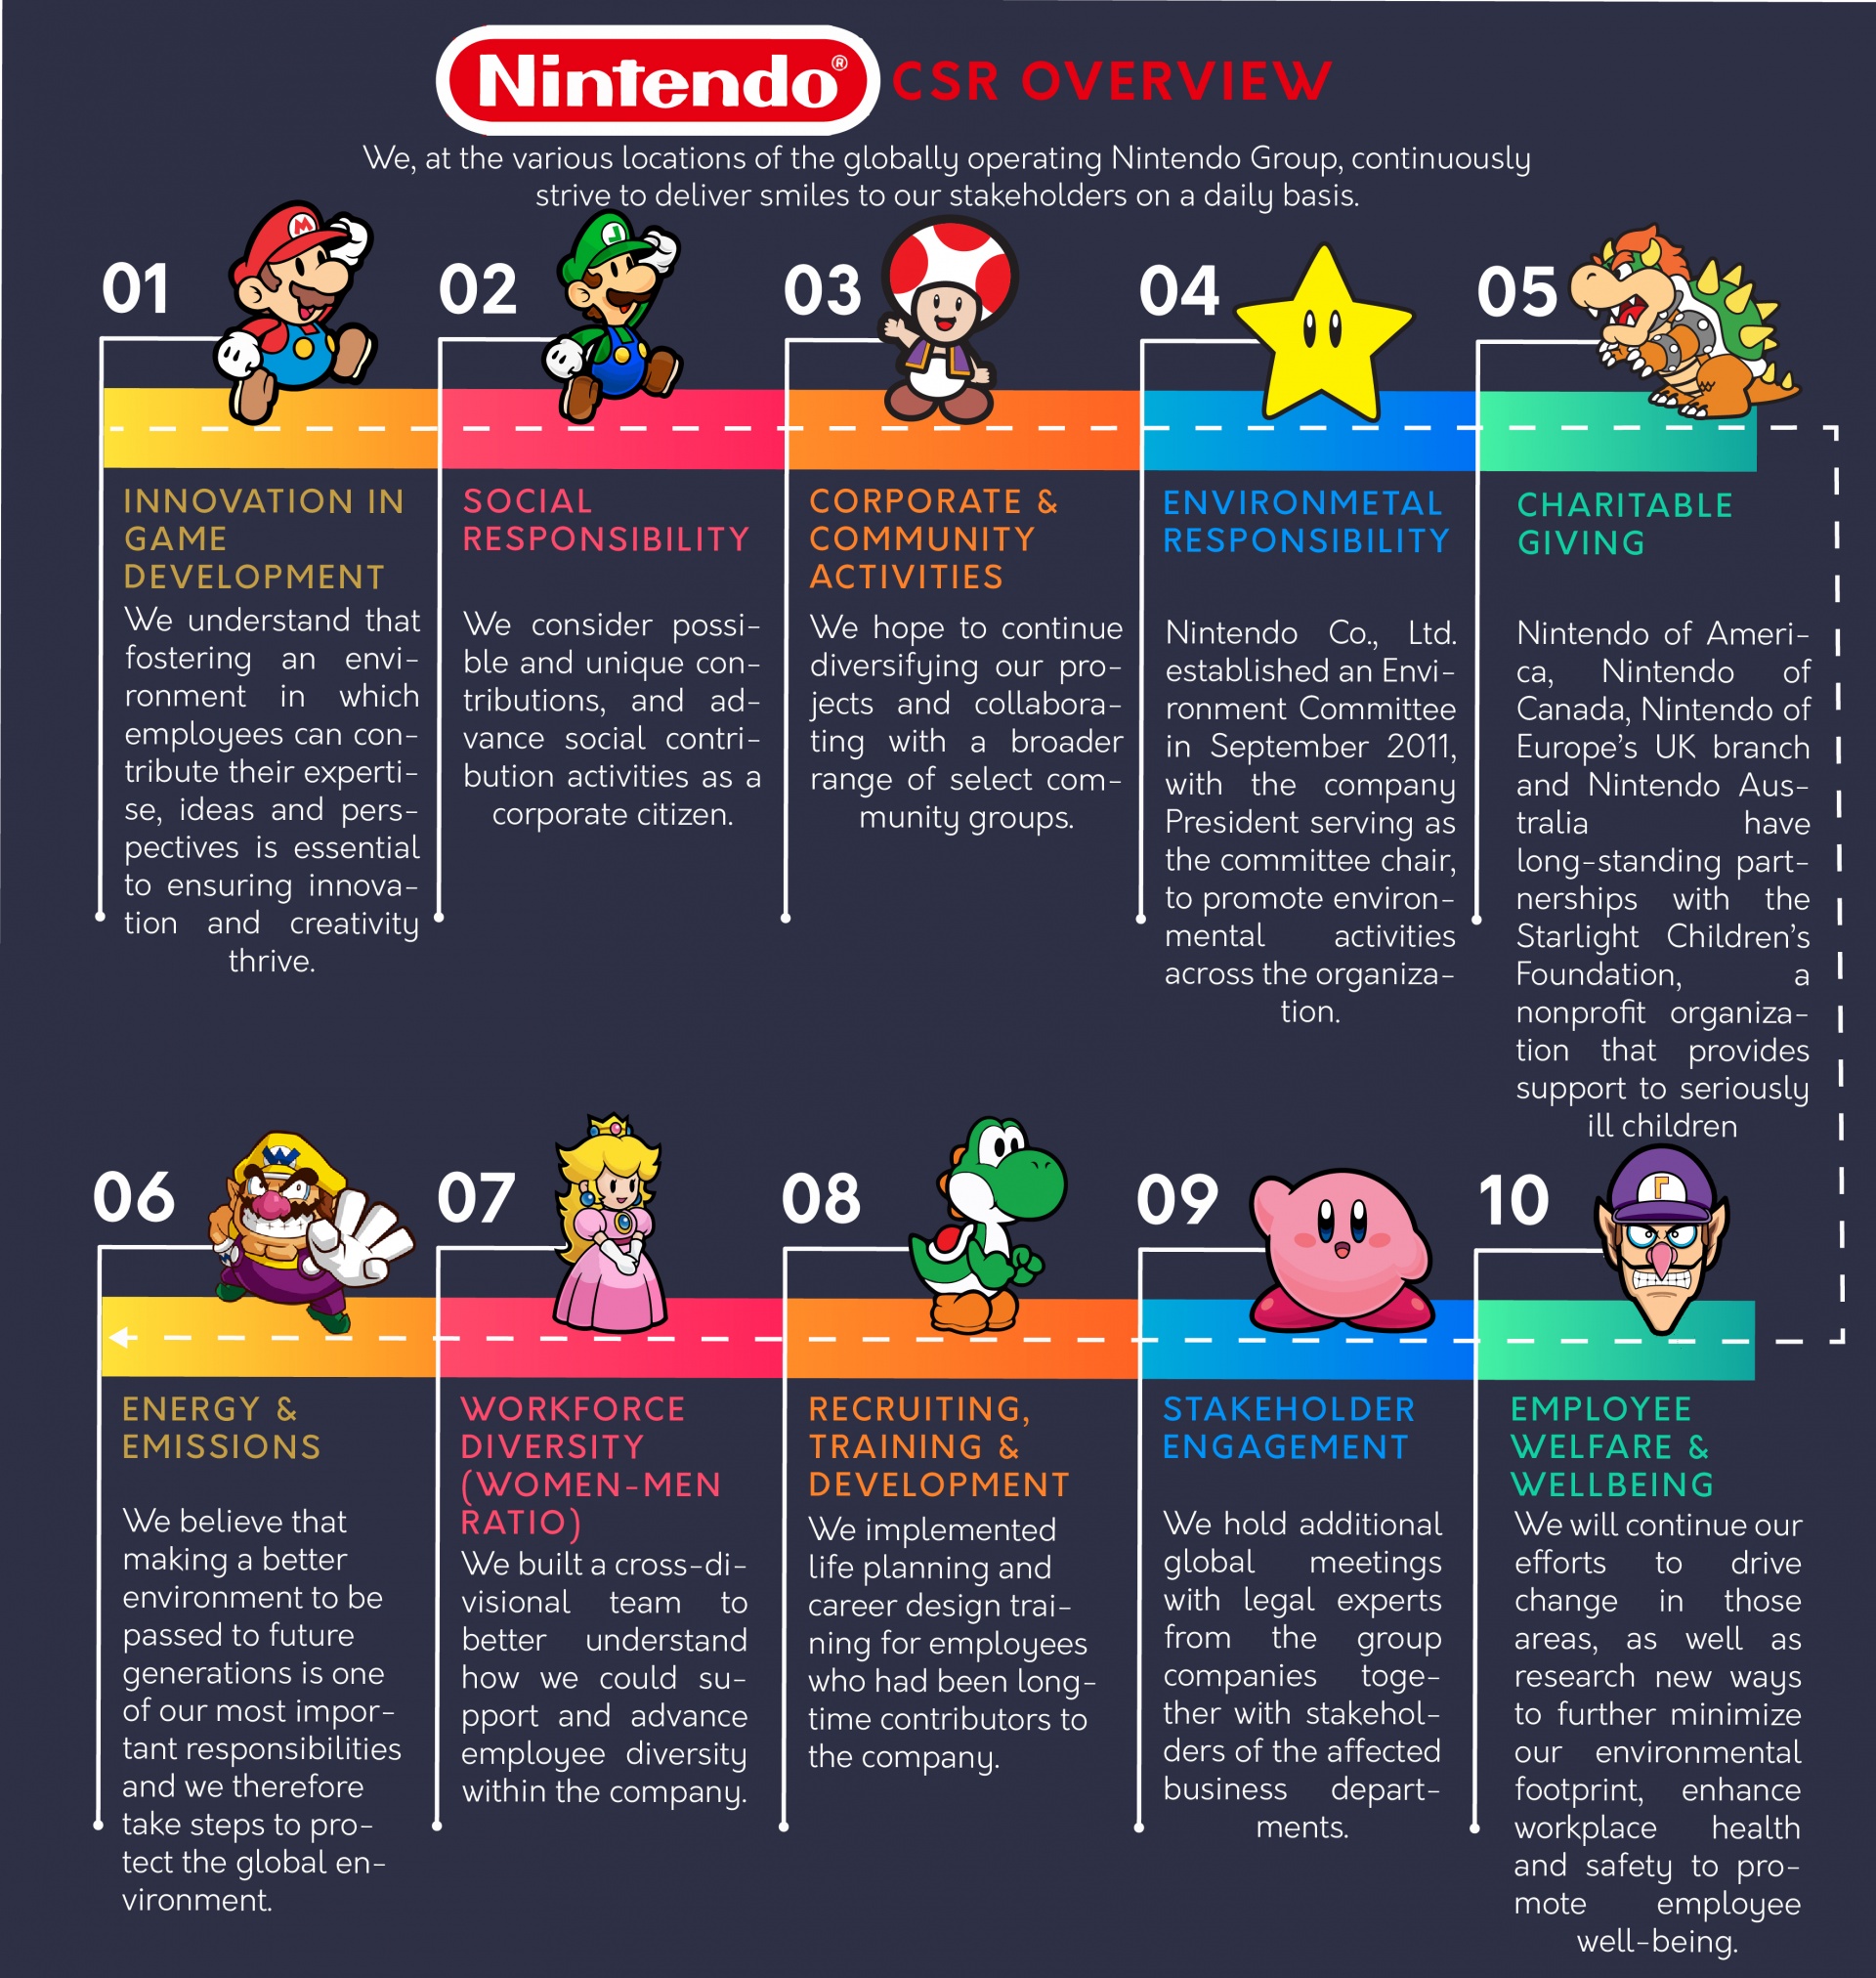 Nintendo CSR Overview